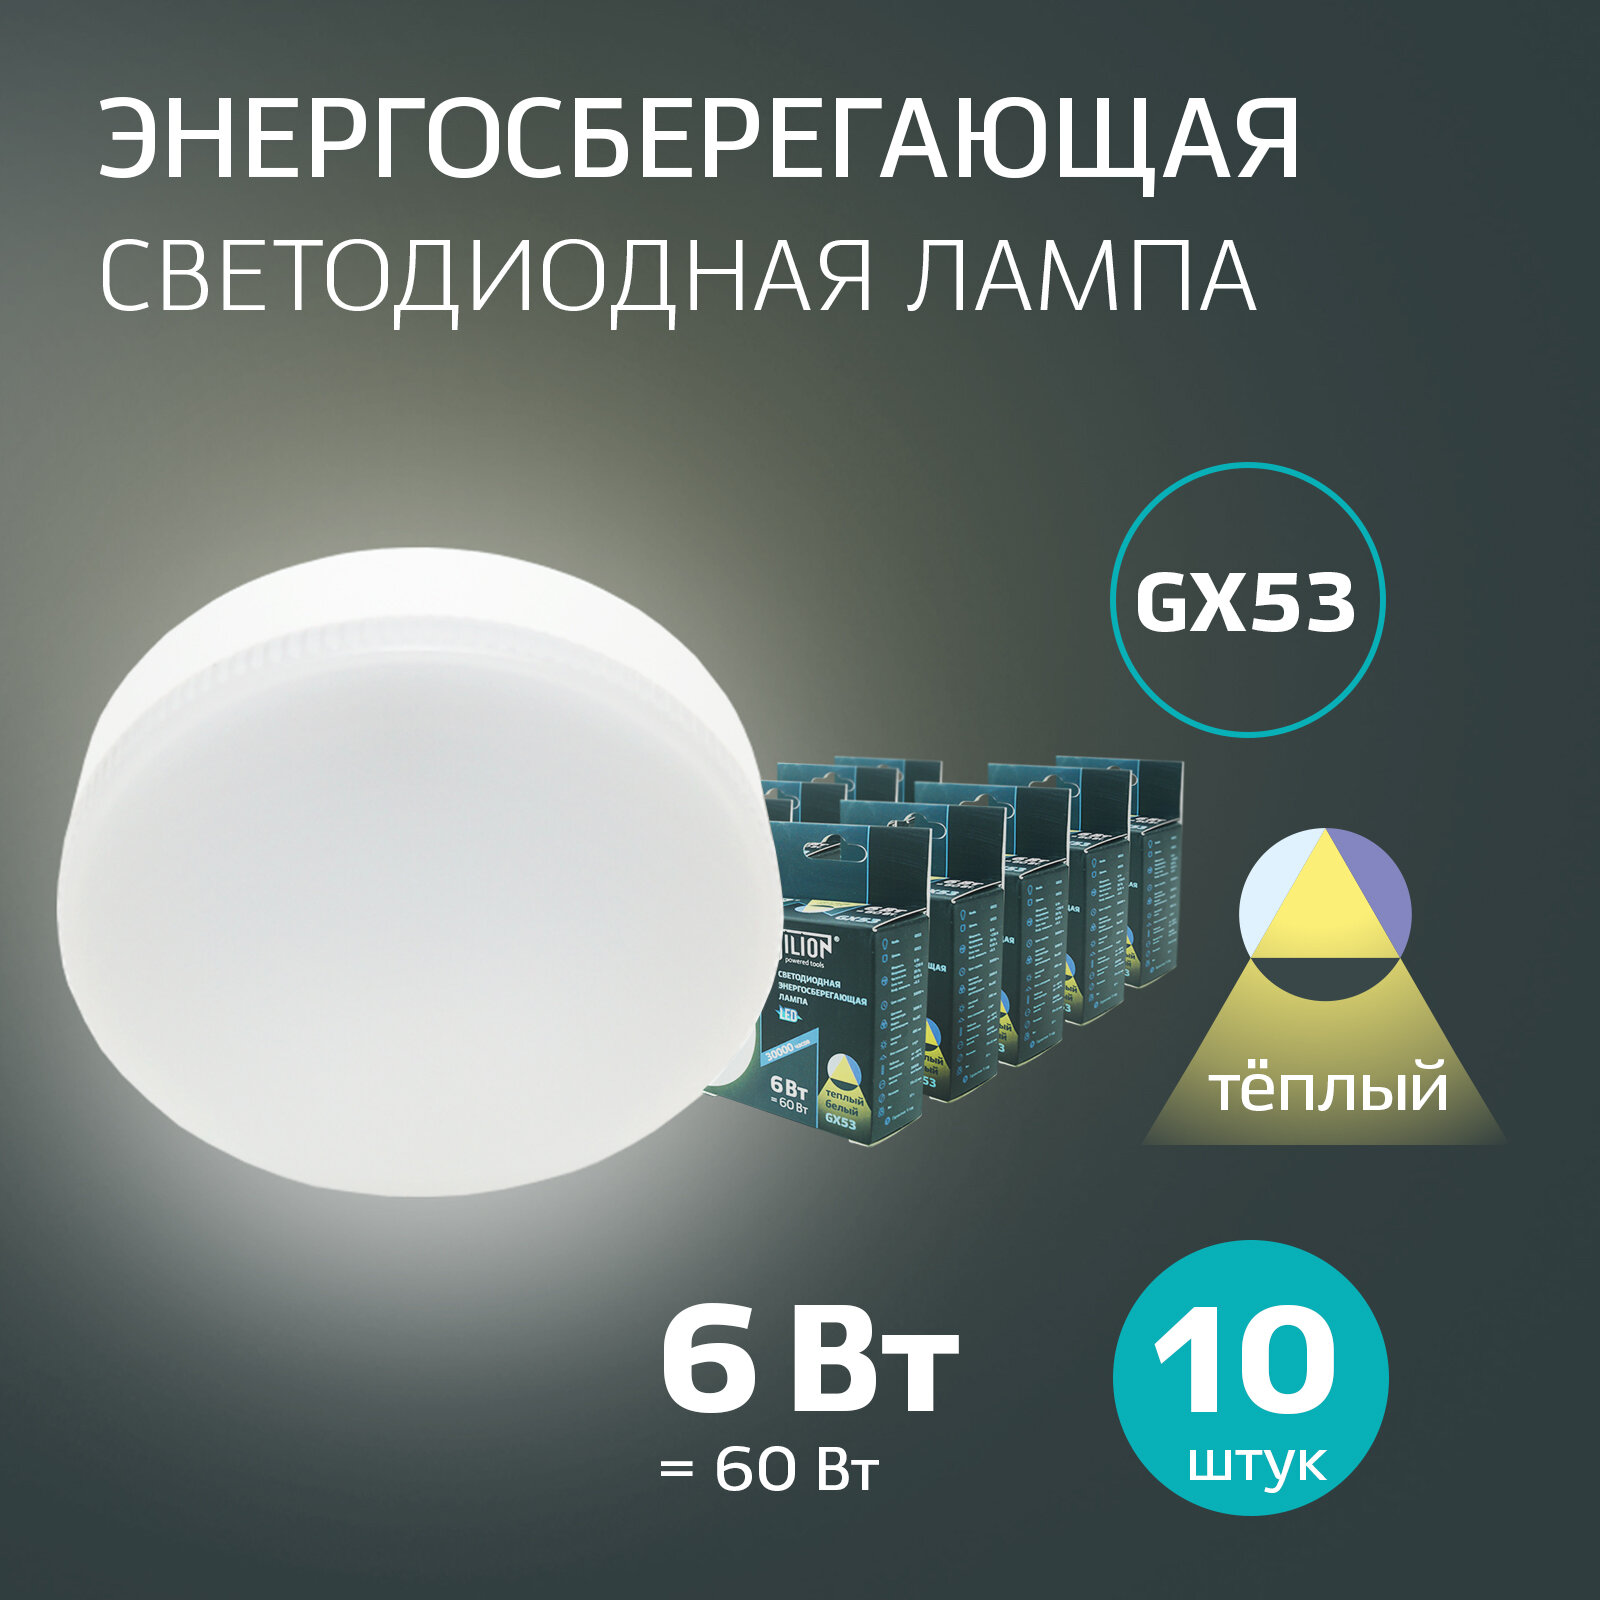 Лампочка светодиодная GX53 таблетка 6 Вт теплый белый 3000 K, 10 шт Jilion для натяжных потолков